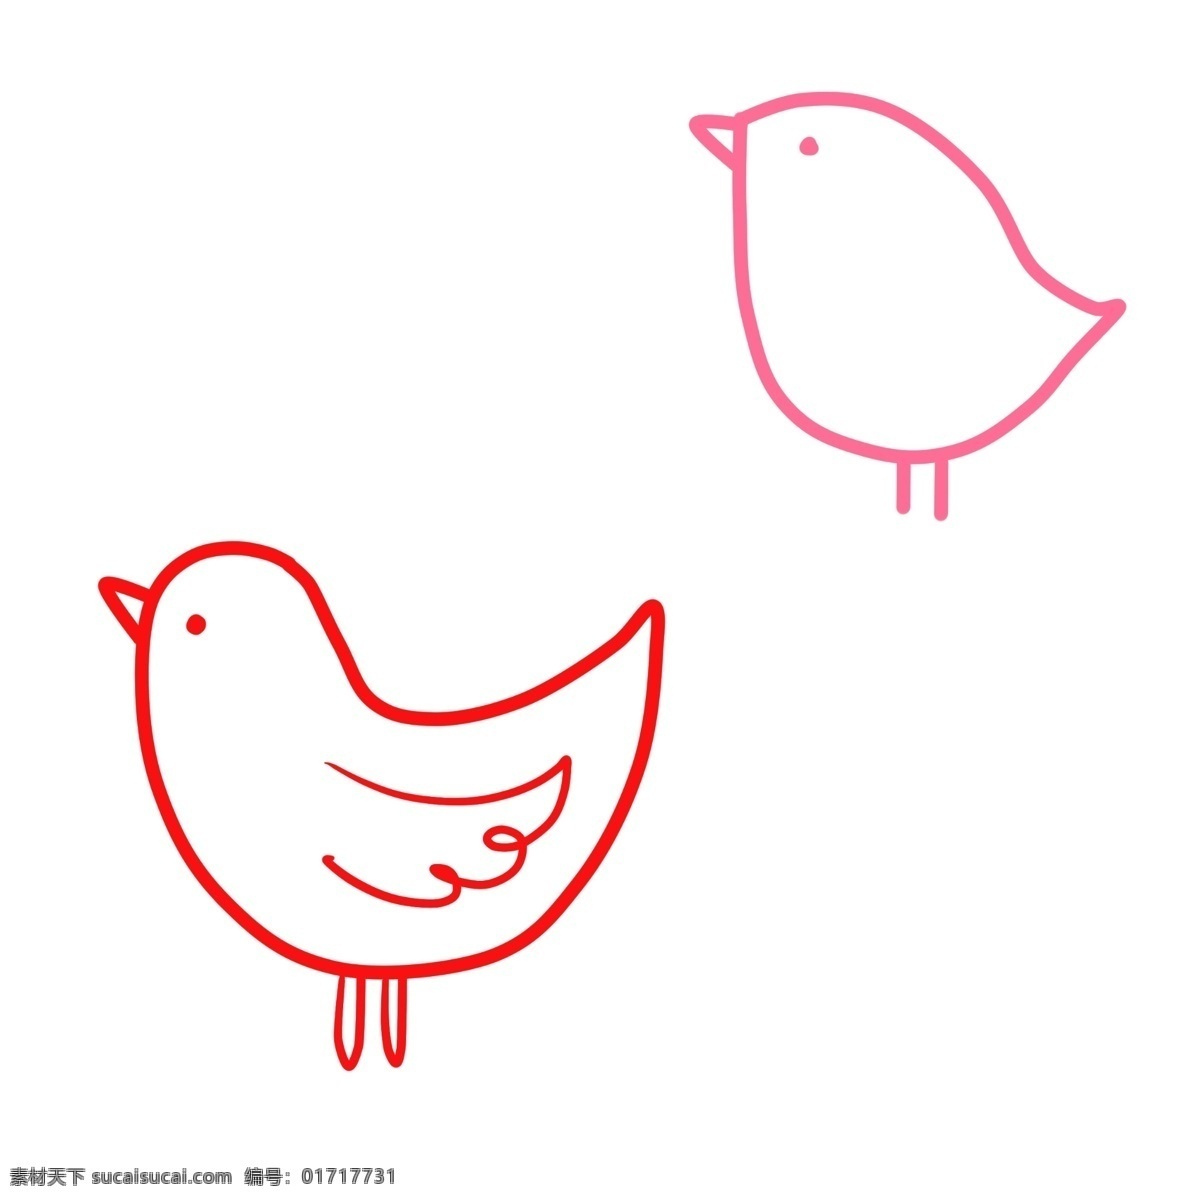 可爱 卡通 小鸟 免 抠 卡通的小鸟 可爱的小鸟 红色的小鸟 粉色的小鸟 简约图形 简笔小鸟 简单的小鸟